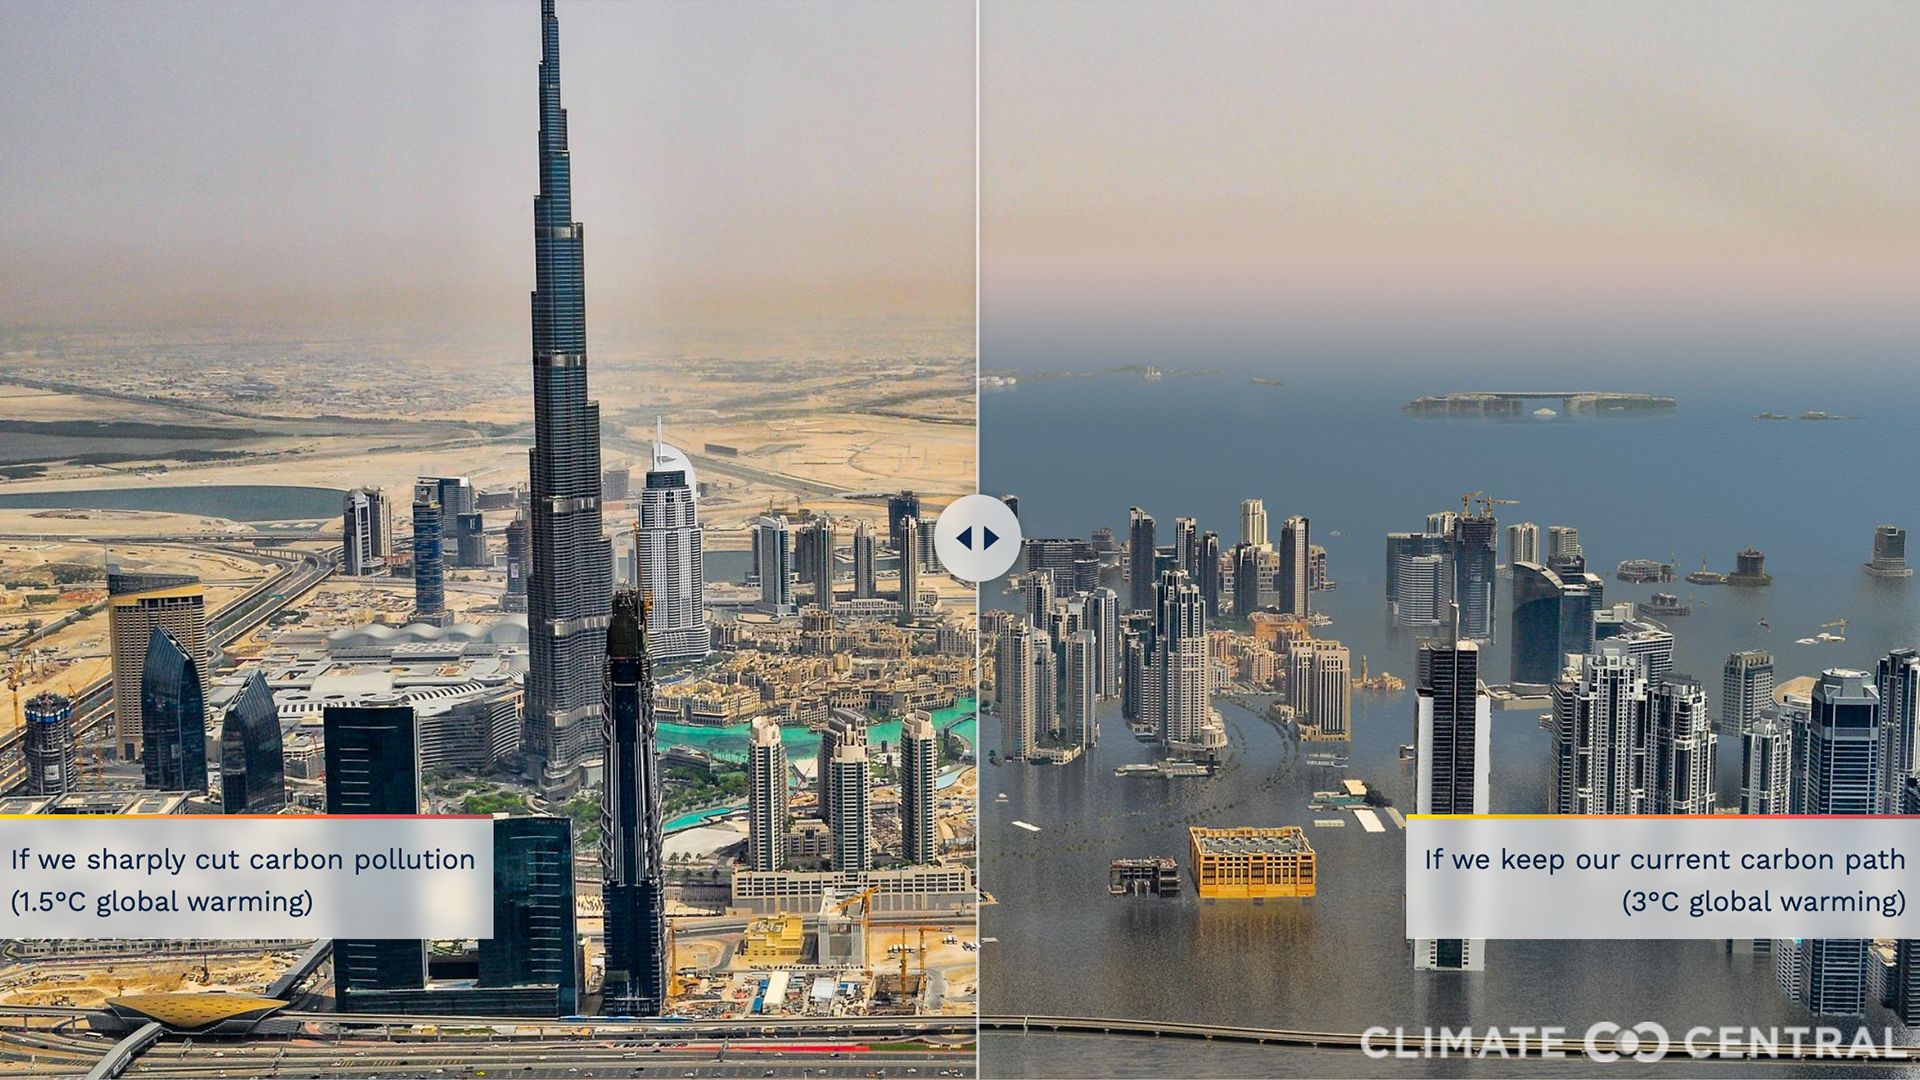 Scenarios for sea level rise in Dubai under 1.5-degrees of warming versus 3-degrees.